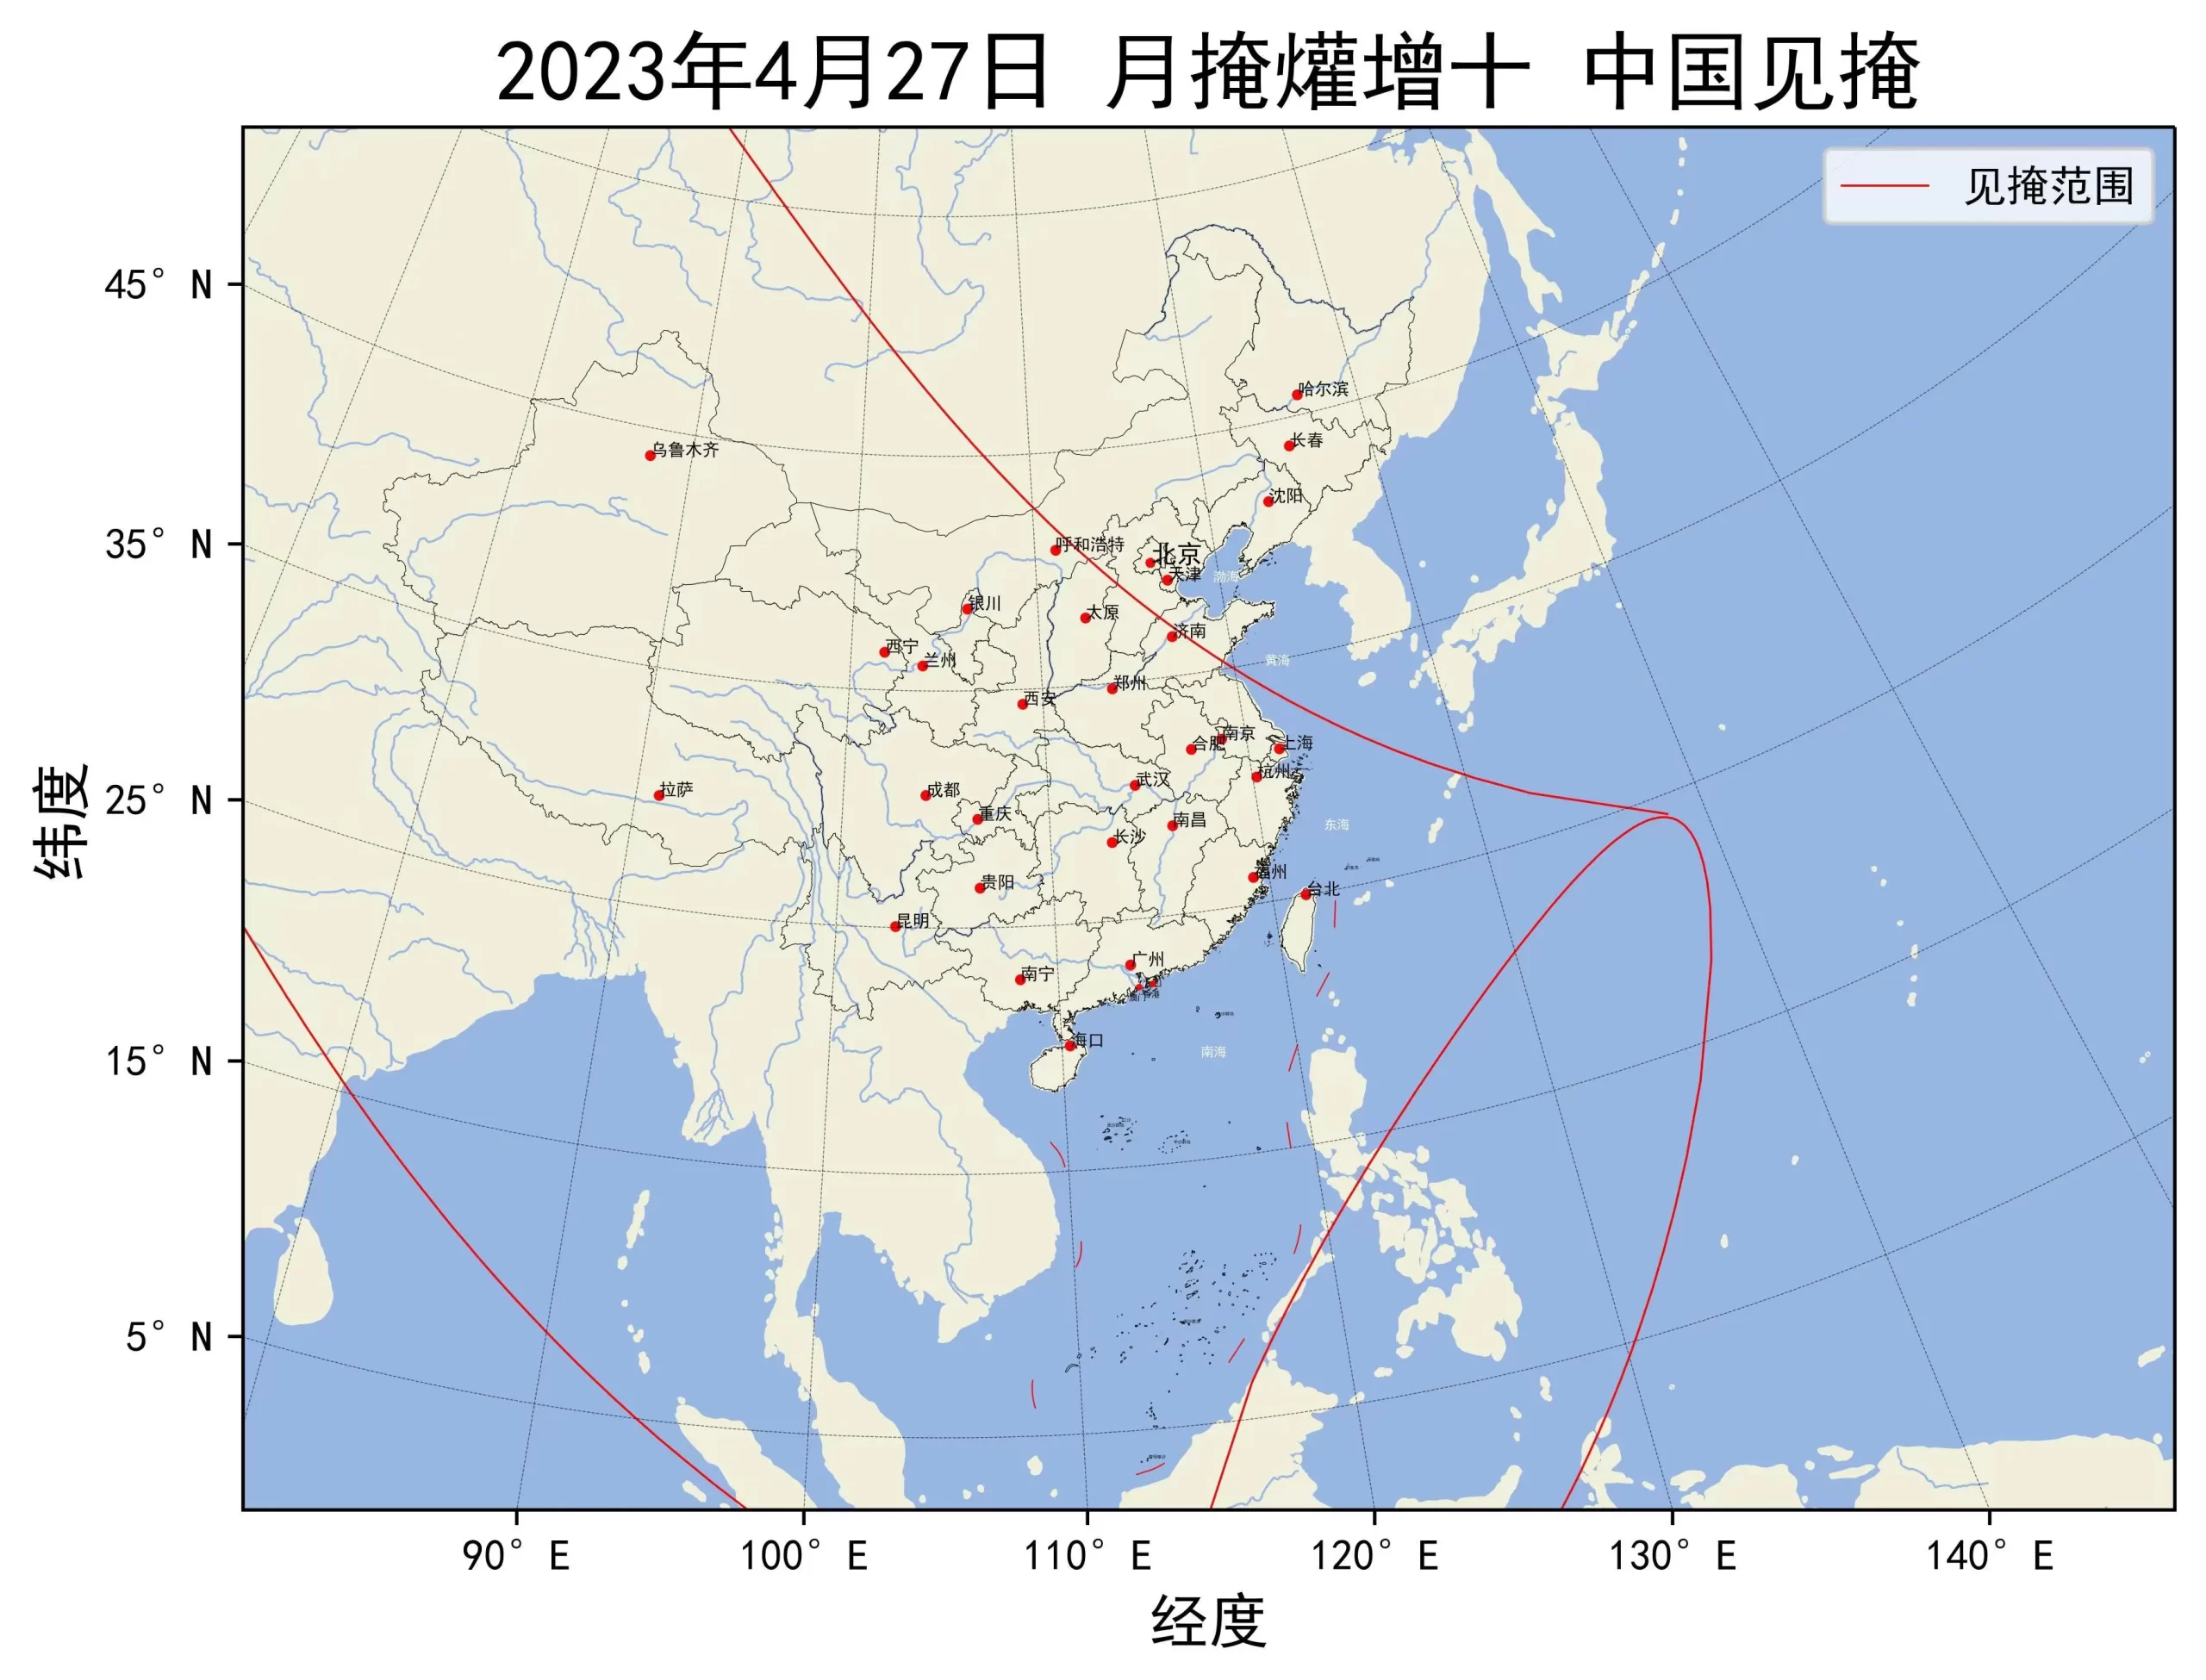 2023年4月27日月掩爟增十中国见掩